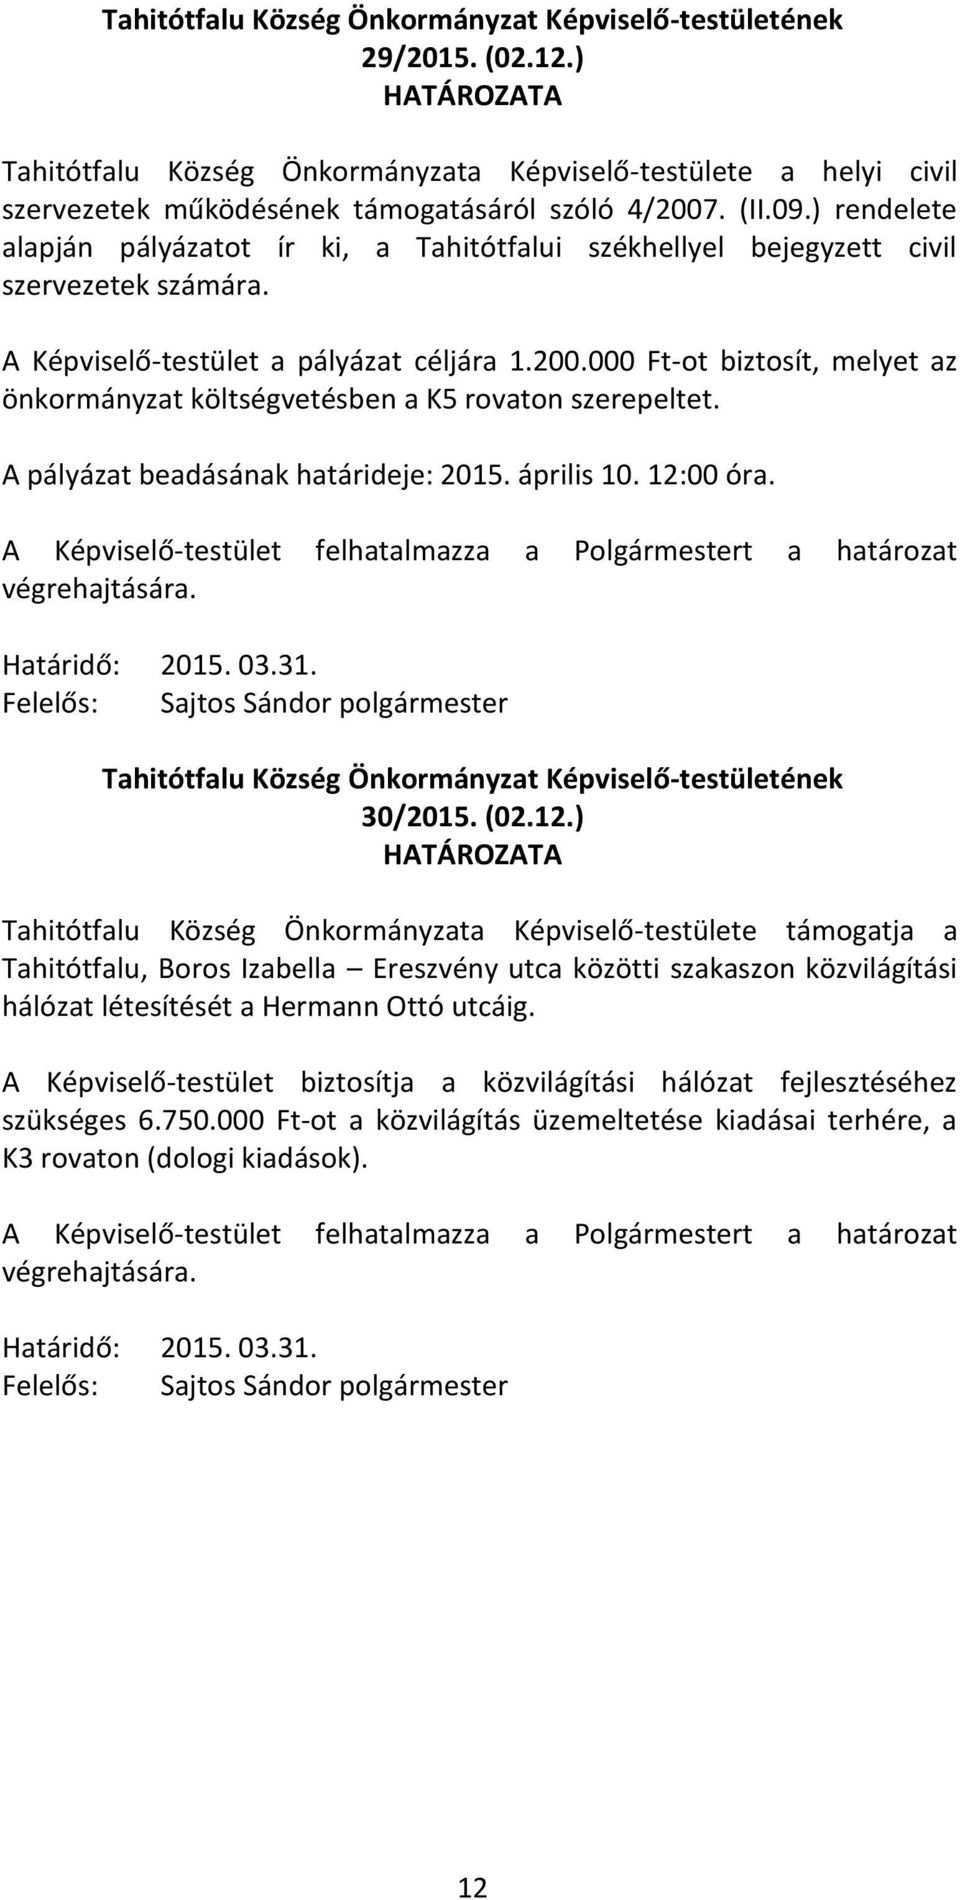 000 Ft-ot biztosít, melyet az önkormányzat költségvetésben a K5 rovaton szerepeltet. A pályázat beadásának határideje: 2015. április 10. 12:00 óra. 2015. 03.31. Sajtos Sándor polgármester 30/2015.